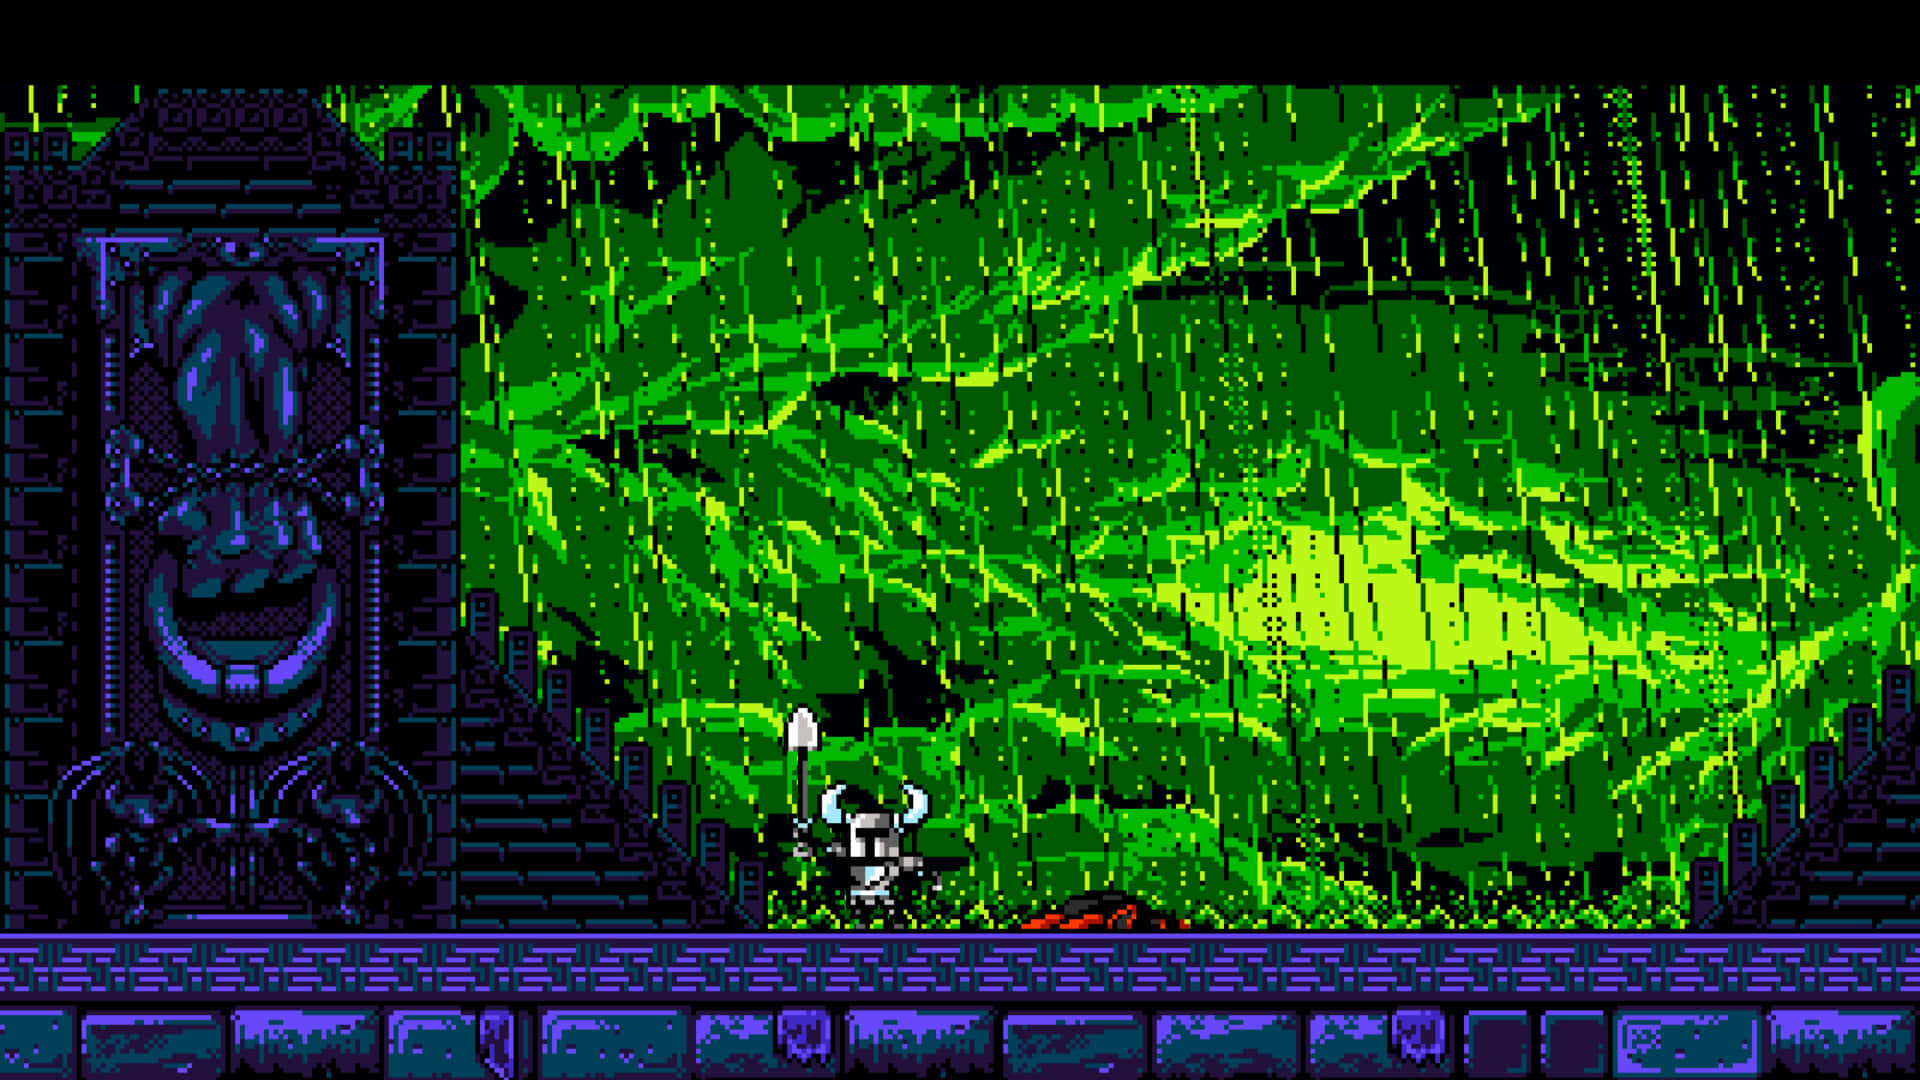 Enskærmbillede Af Et Videospil Med En Grøn Skærm.